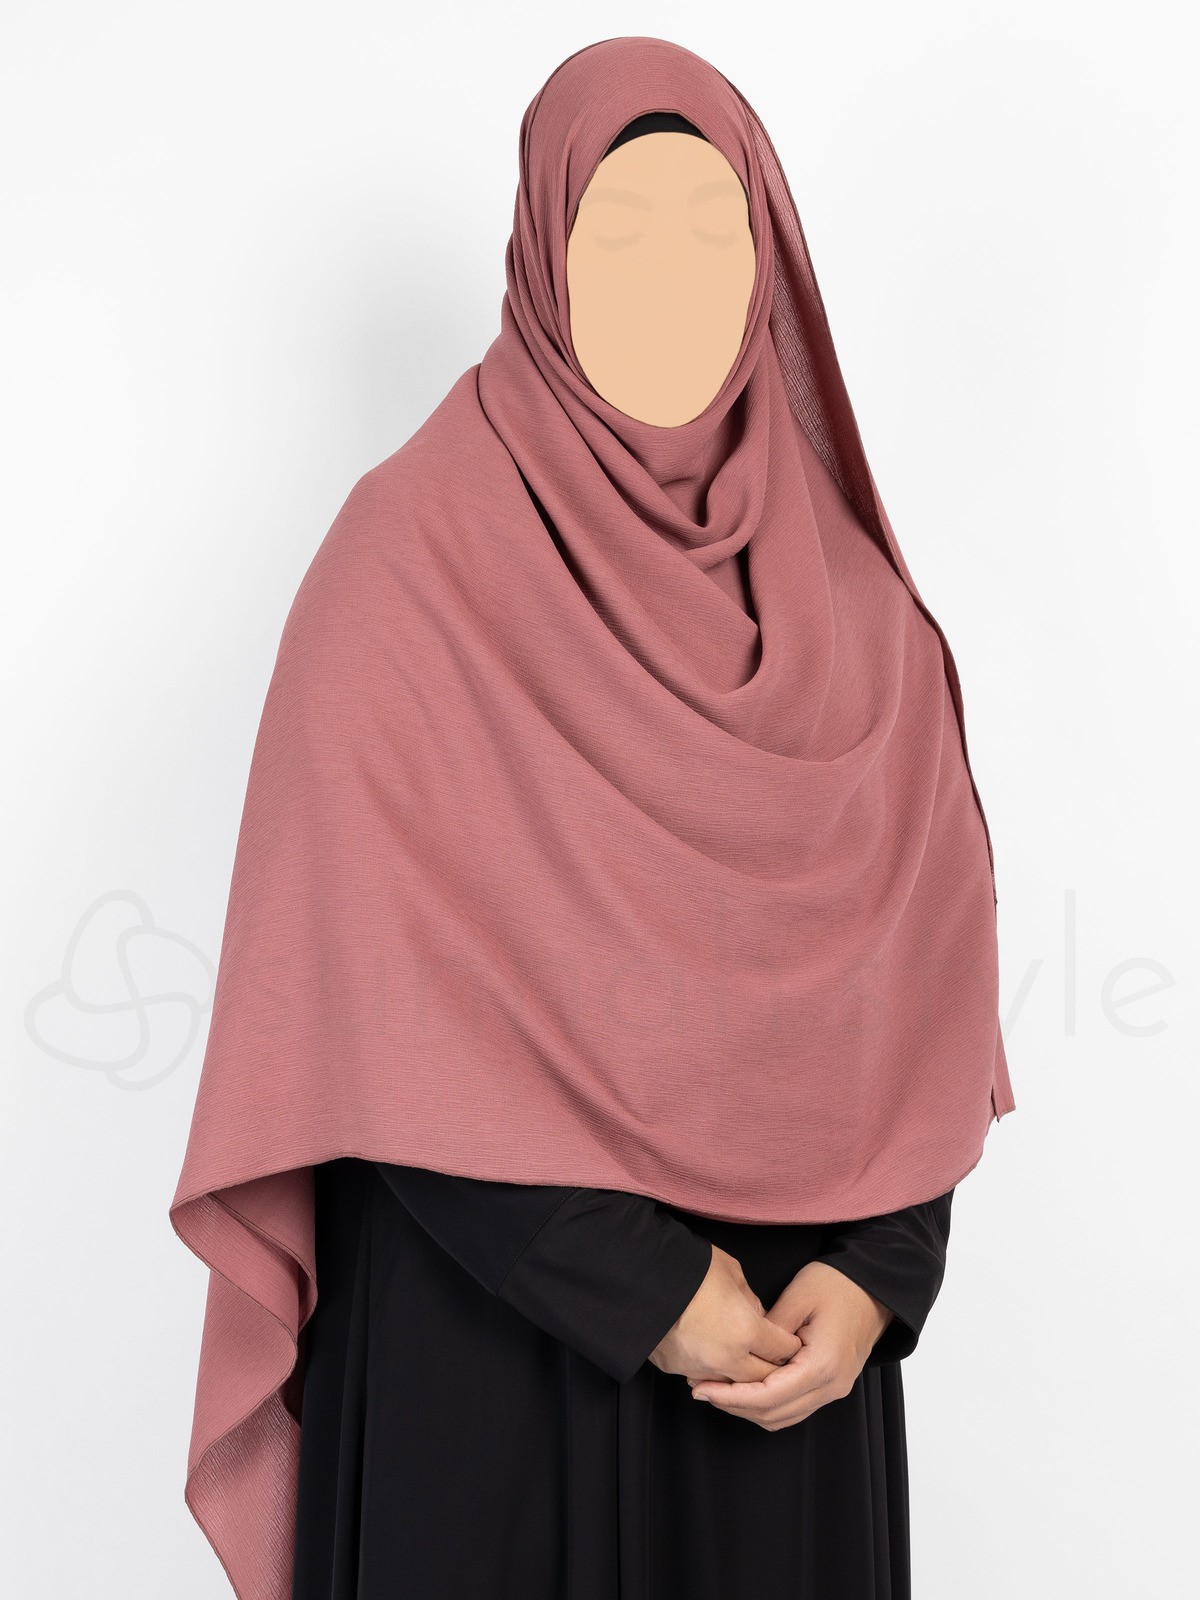 Sunnah Style - Brushed Shayla - XL (Canyon Rose)